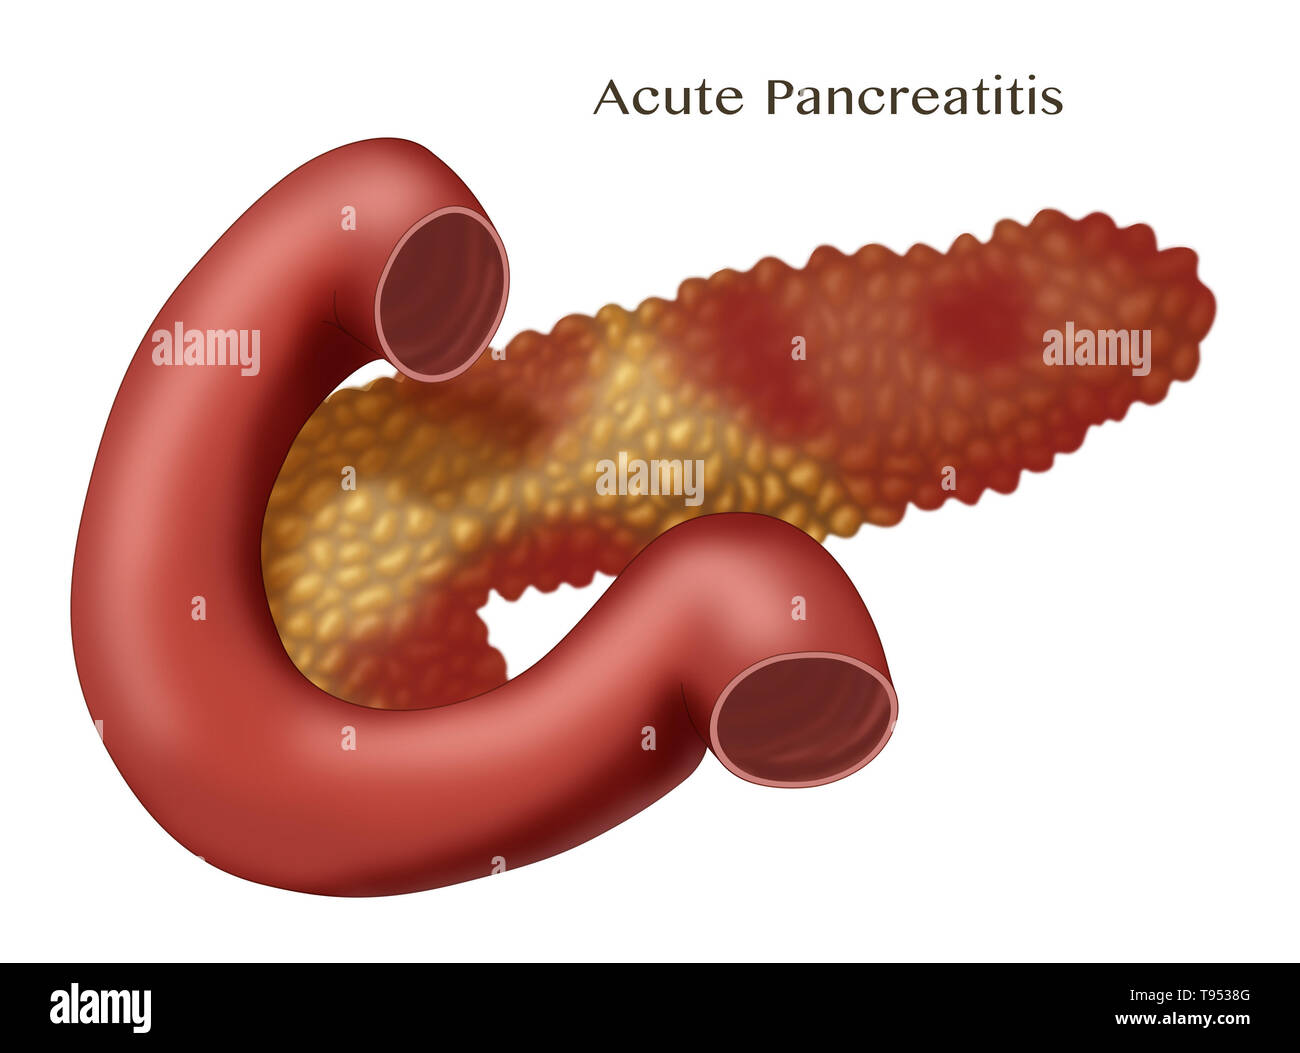 Zeigt ein Pankreas mit einer akuten Pankreatitis. Pankreatitis ist eine Entzündung in der Bauchspeicheldrüse. Stockfoto